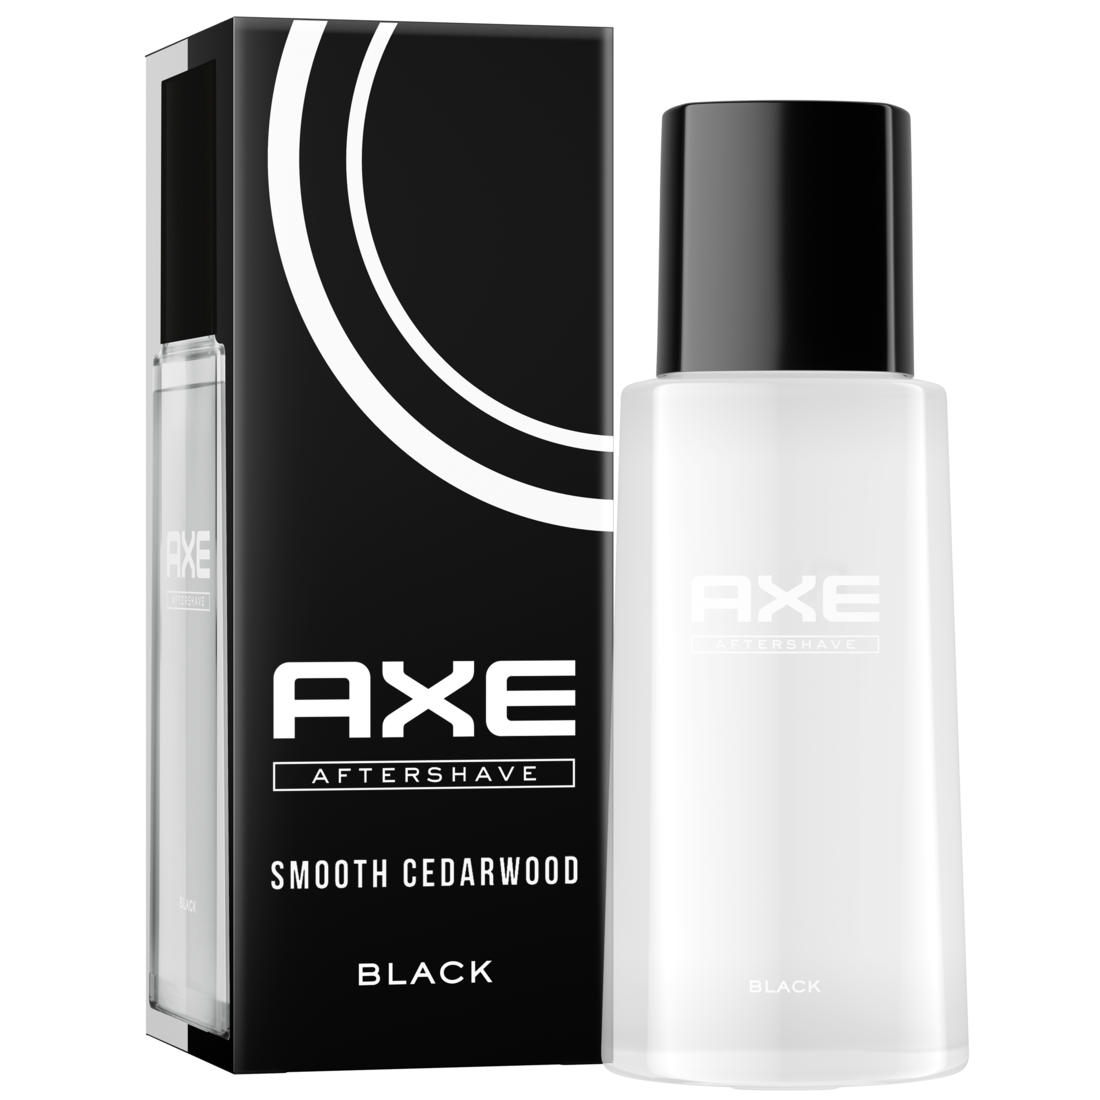 Aftershave Black für gepflegte Haut mit würzig-maskulinem Duft nach Zedernholz und gefrorener Birne 100 ml